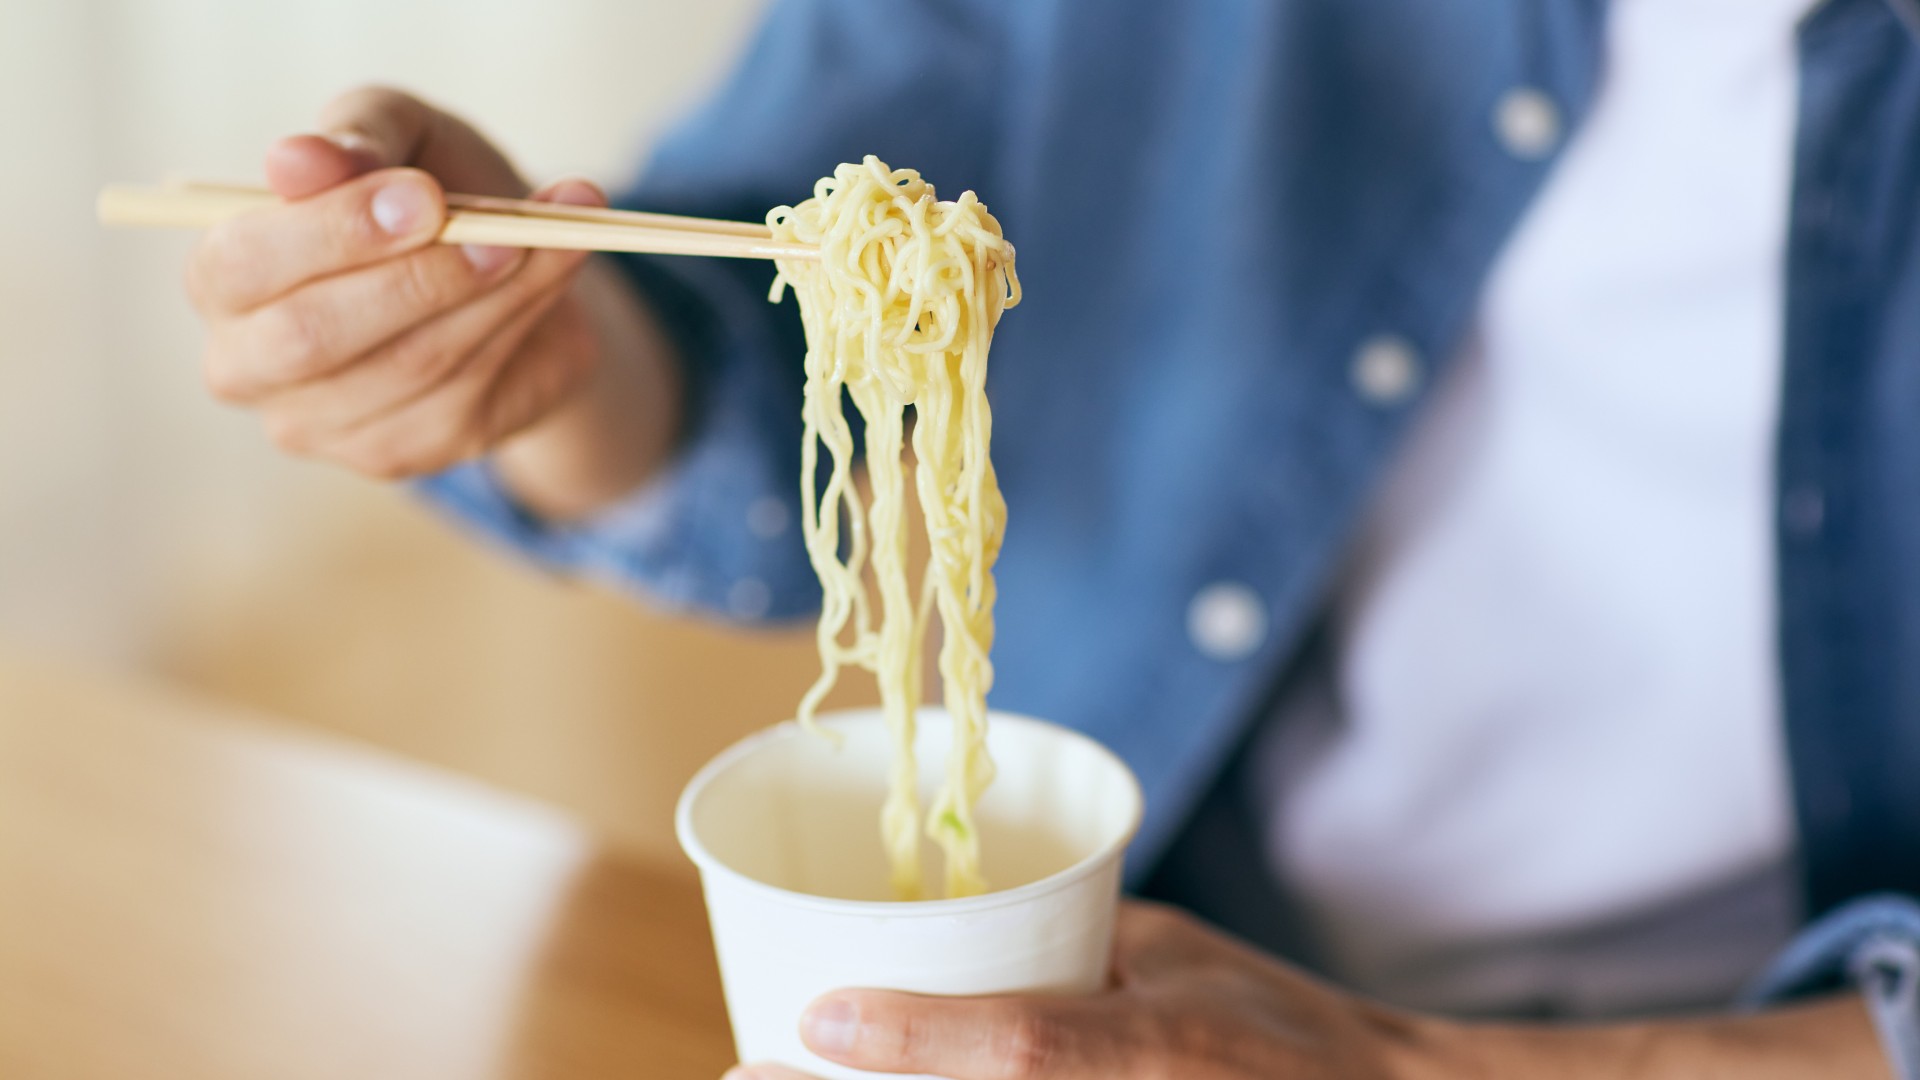 Person eating a pot noodle